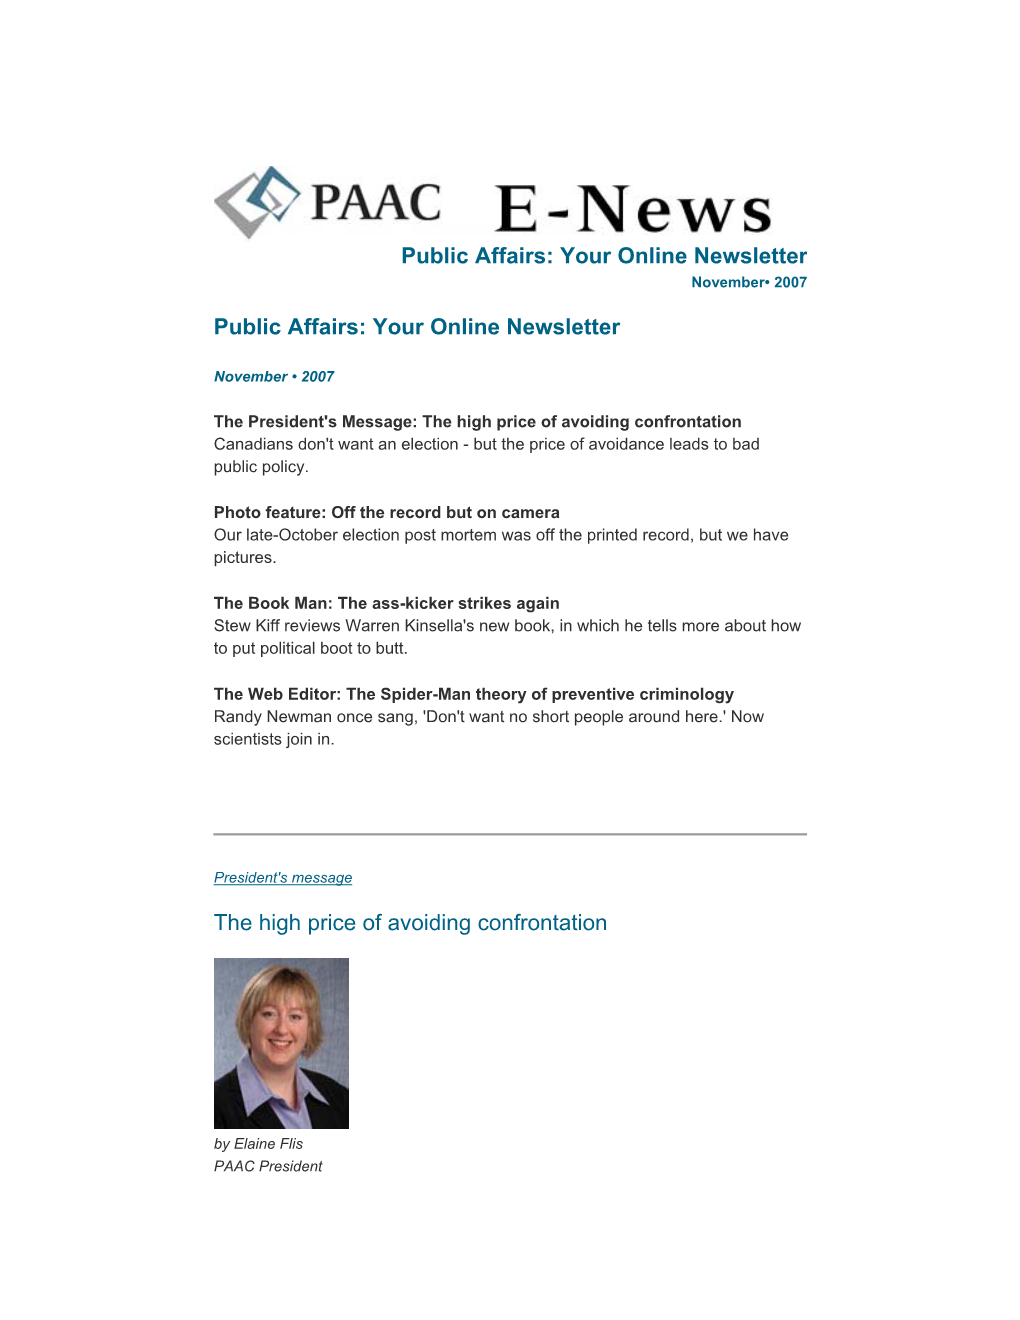 PAAC E-News, November, 2007